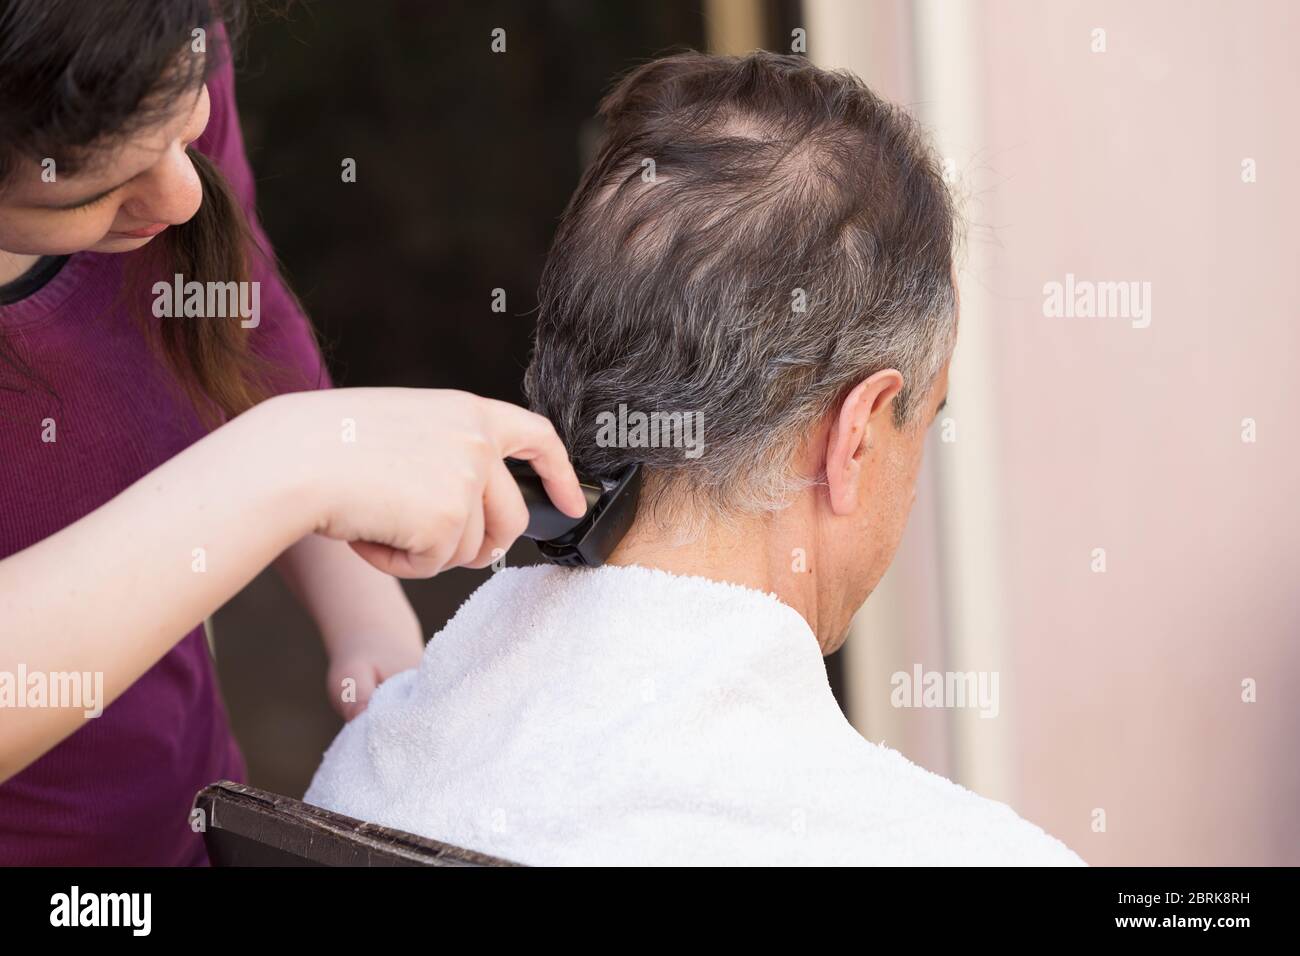 Miembro de la familia cortando el pelo de los hombres en casa Foto de stock